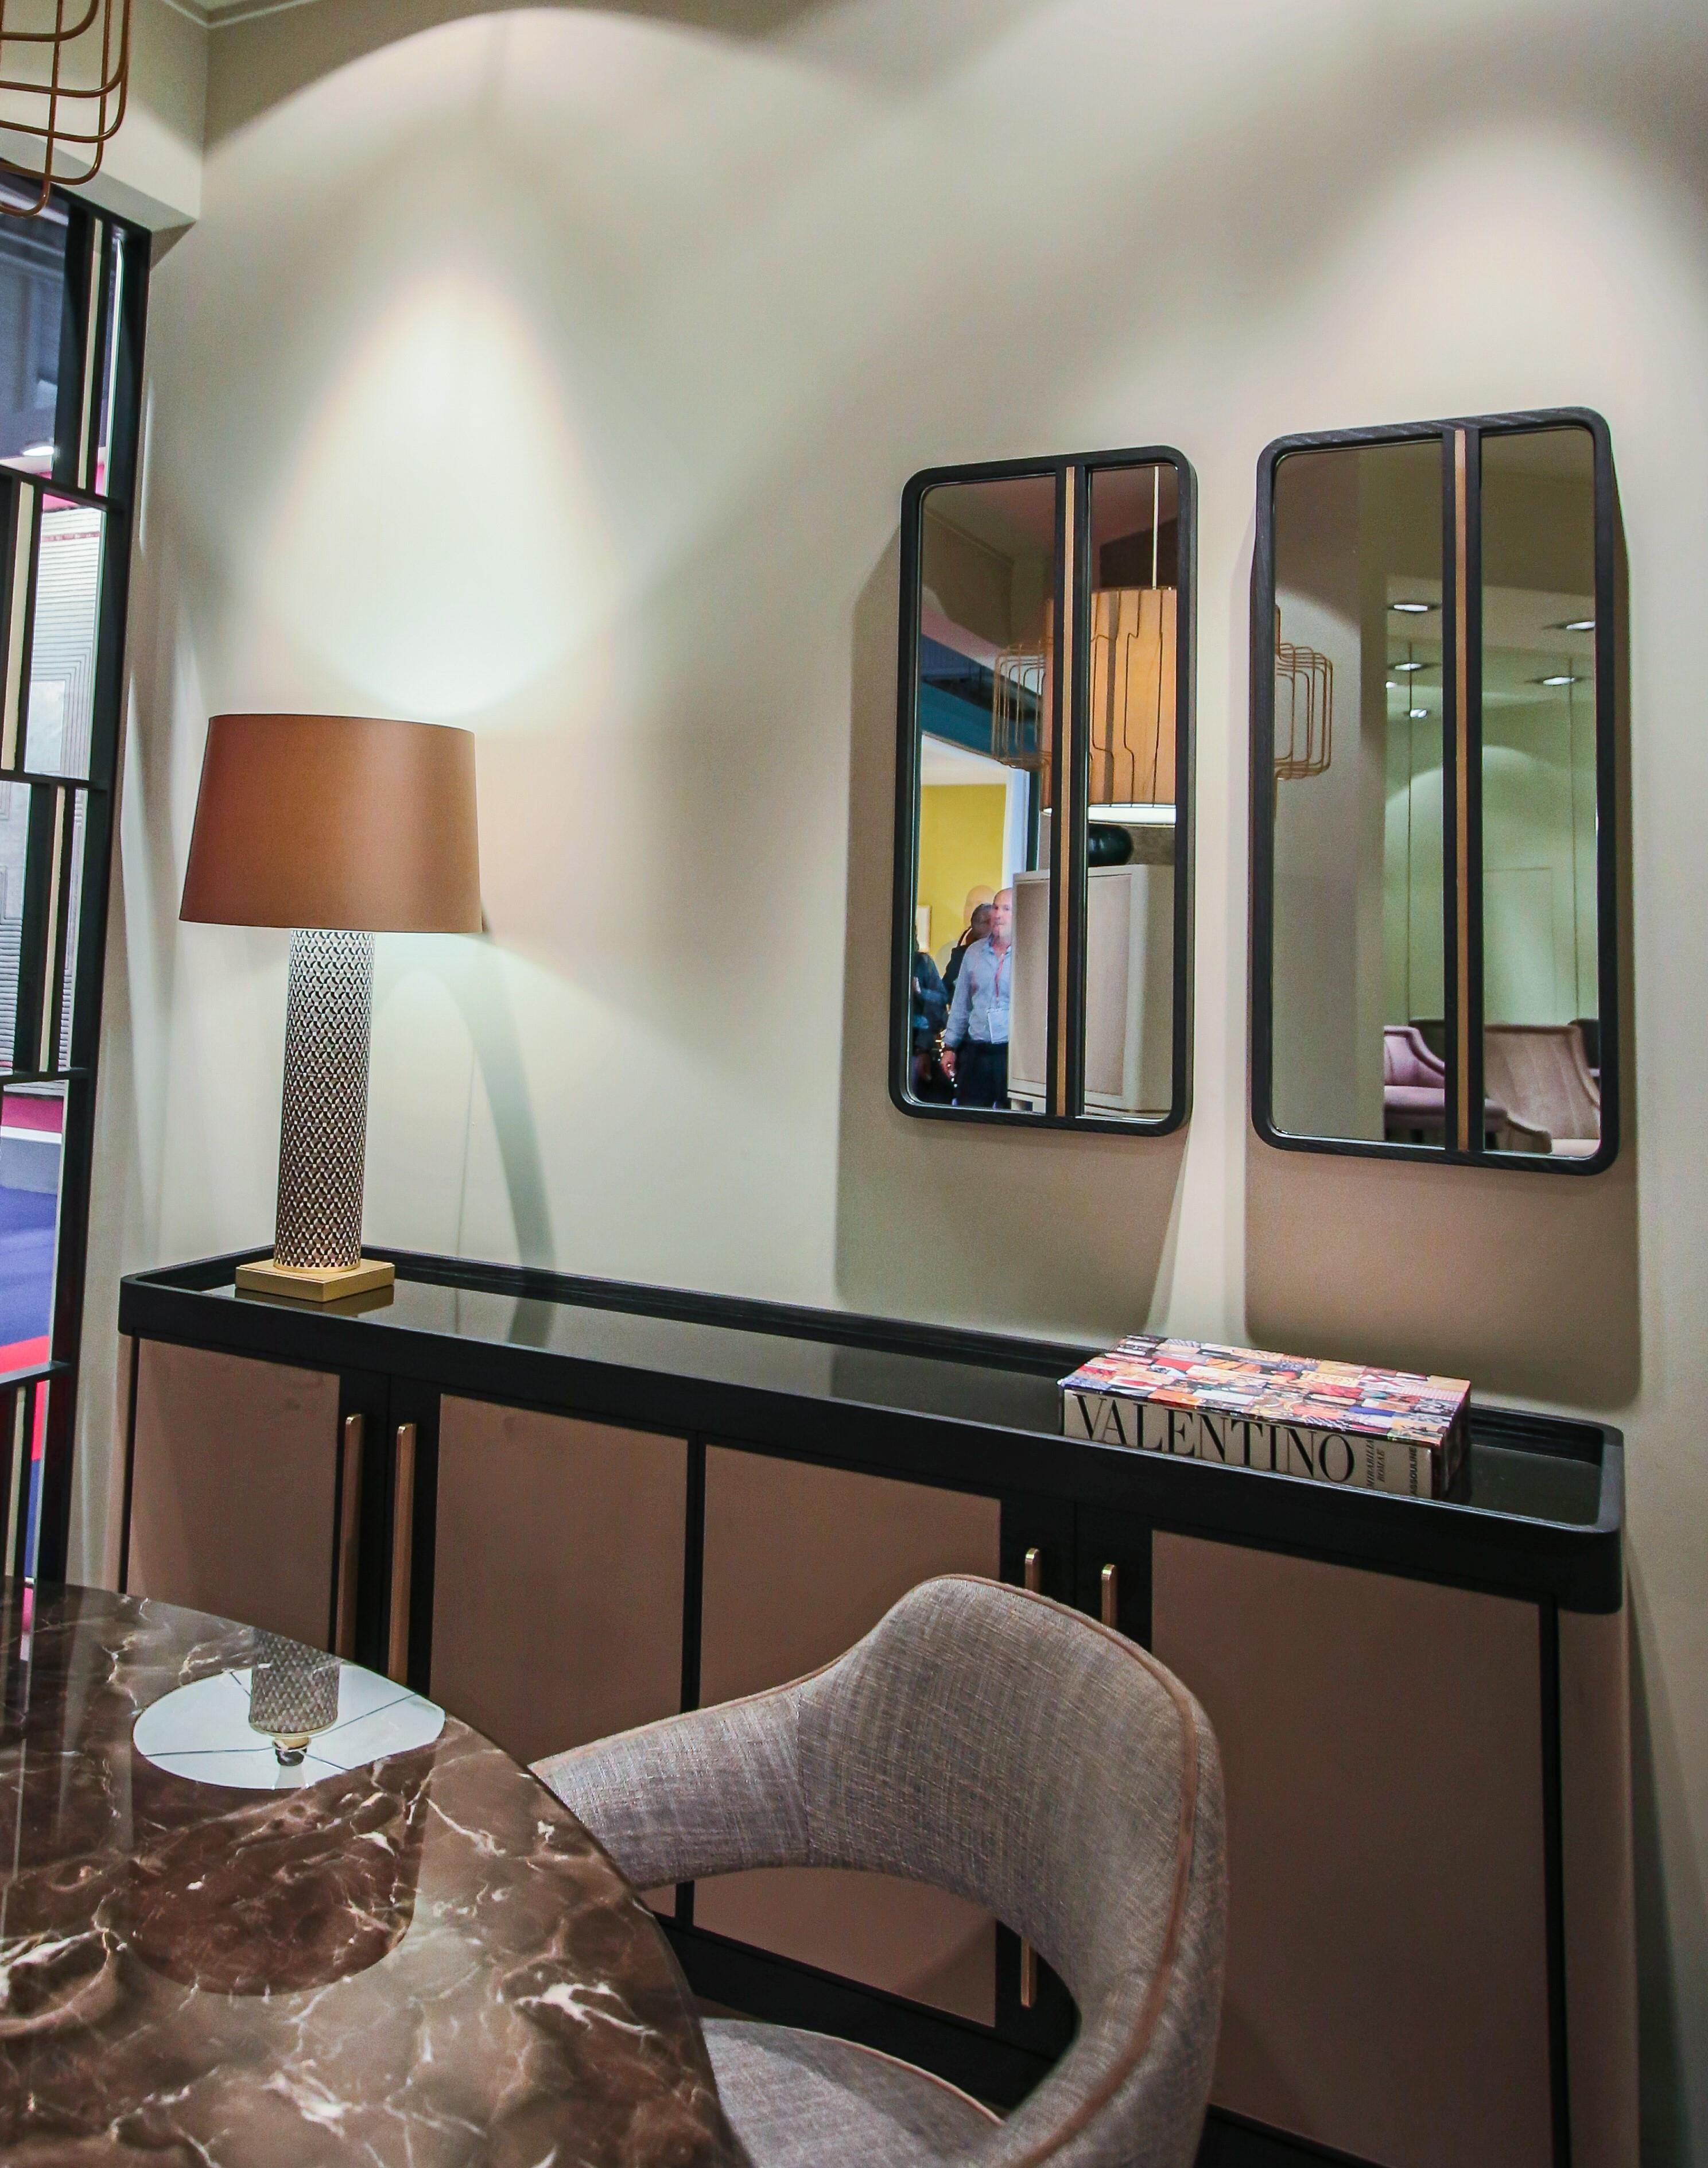 Ein elegantes Möbelstück, das sich für alle Umgebungen eignet und einzeln oder paarweise verwendet werden kann. Der Spiegel GUGA zeichnet sich durch einen lackierten Holzrahmen mit einem vertikalen Detail aus antikem Messing aus.

Abgebildet in